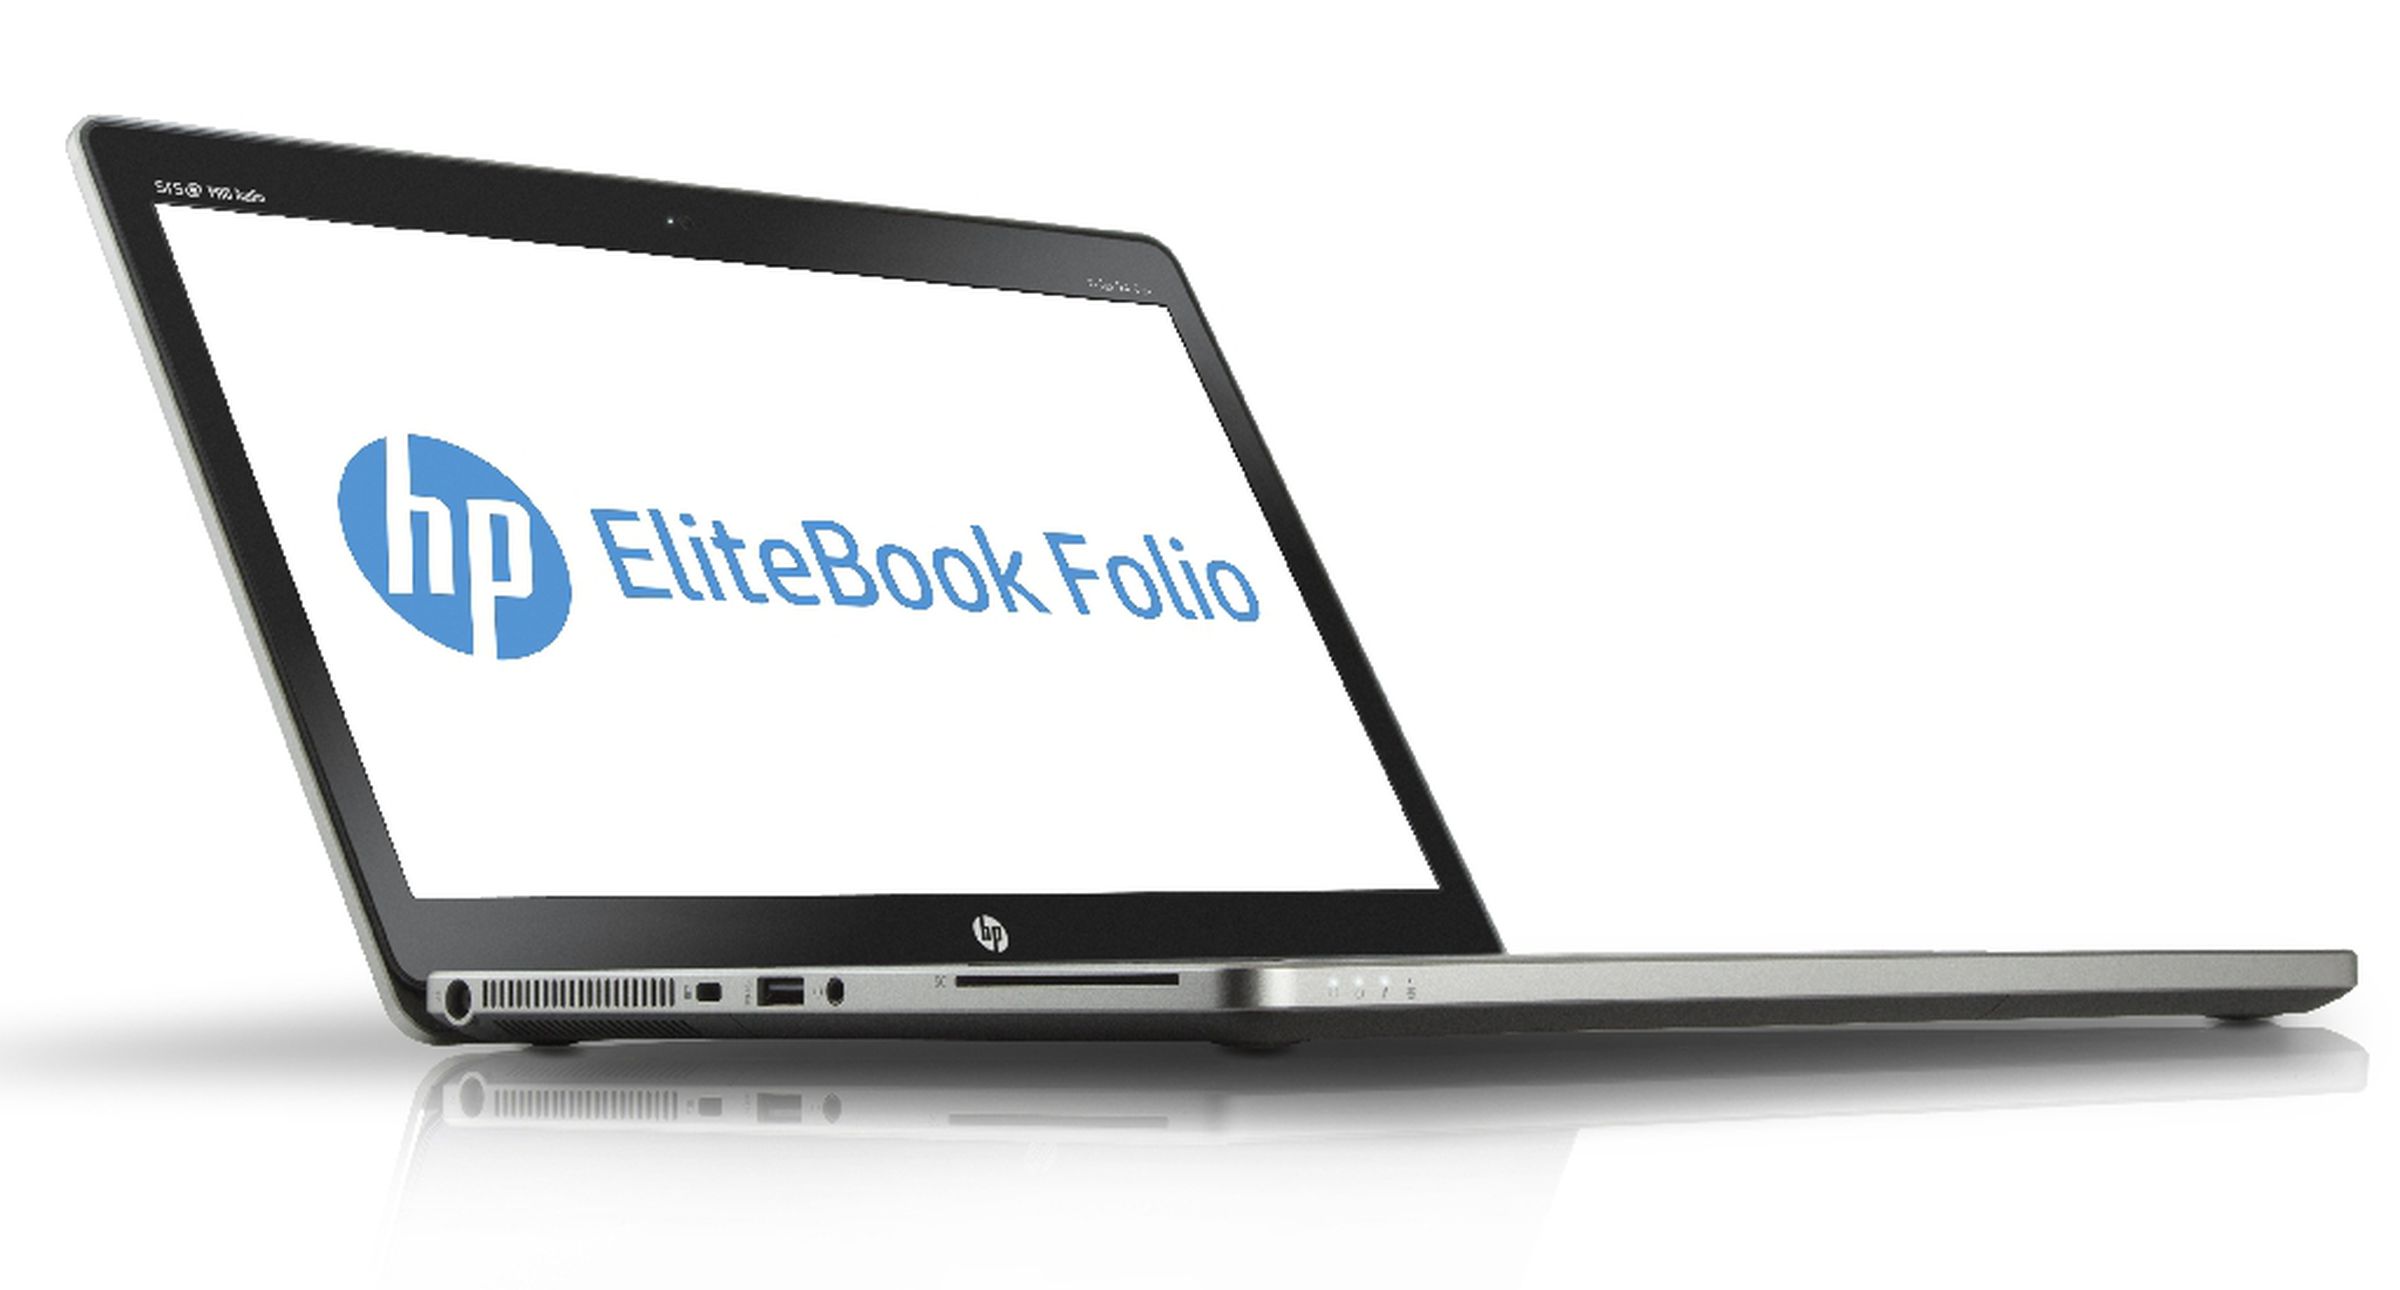 HP Elitebook Folio press pictures